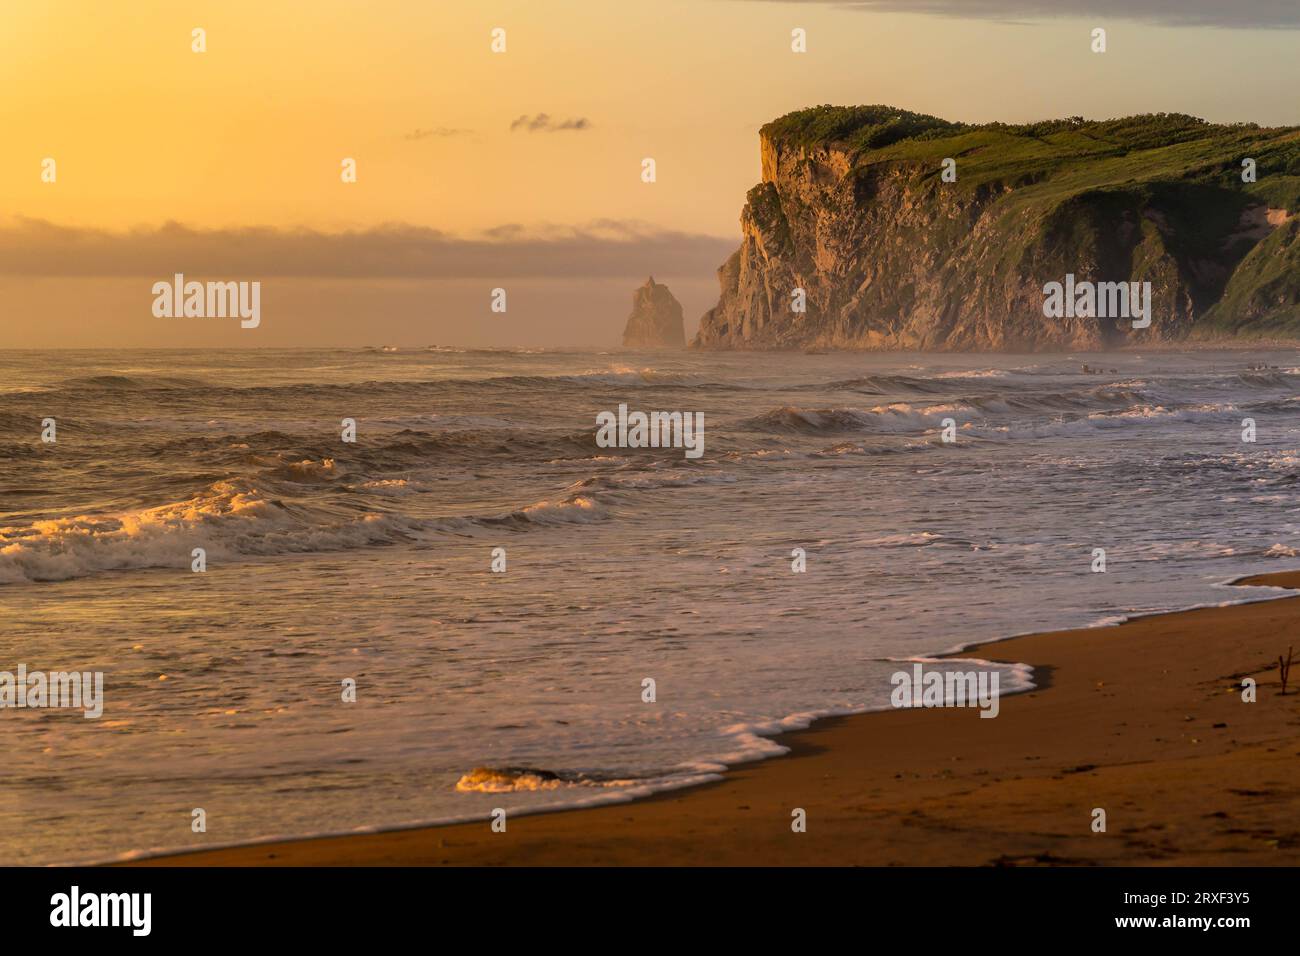 Le rocher pittoresque et la plage de sable la côte de la mer du Japon pendant le beau lever de soleil coloré dans la région de Primorsky dans l'extrême-Orient russe. Banque D'Images